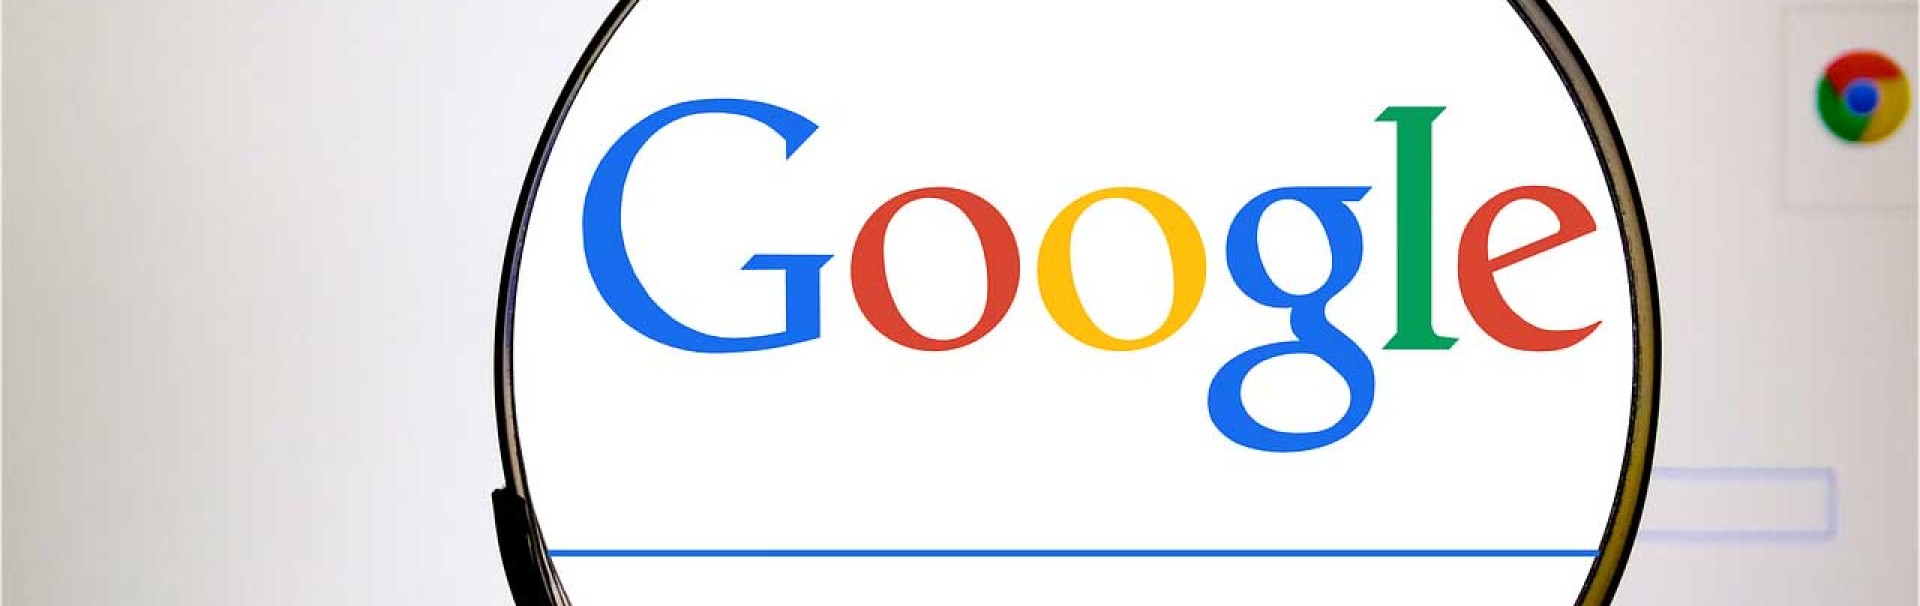 Durch eine Lupe wird der Schriftzug von Google und das Eingabefeld der Suchmaschine vergrößert sichtbar.